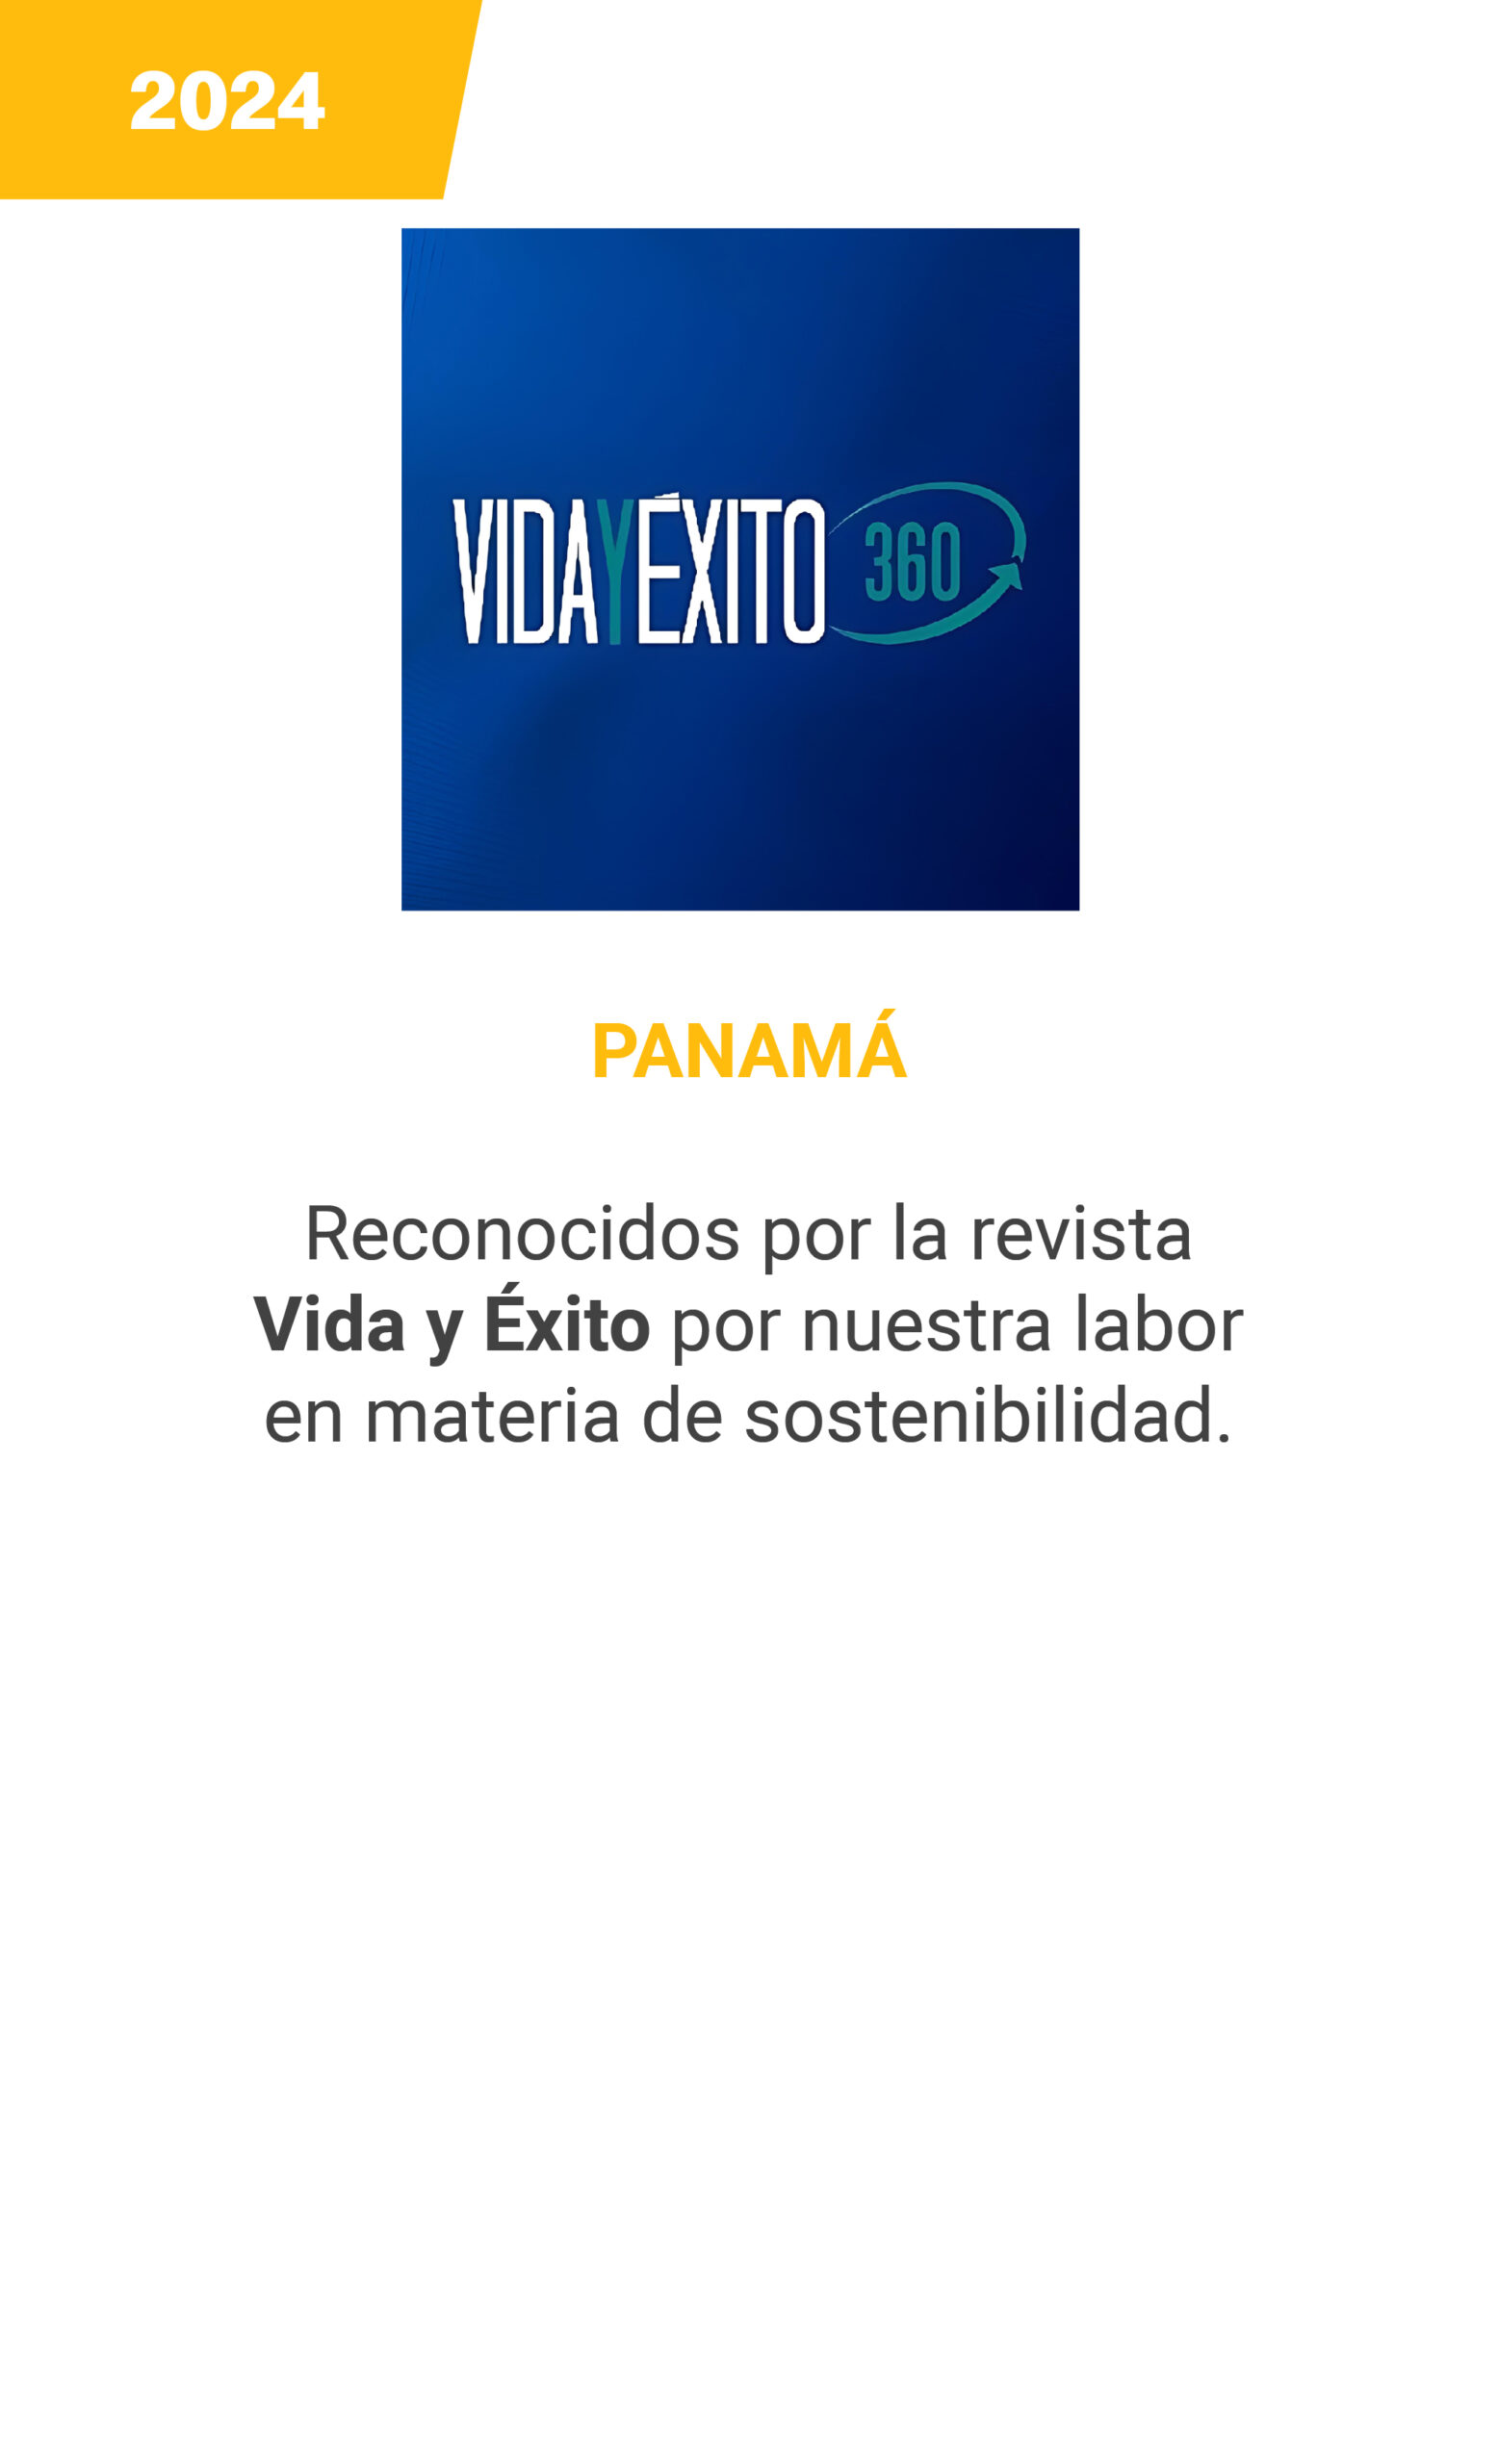 Vida y exito - Panama - 2024 - mobile